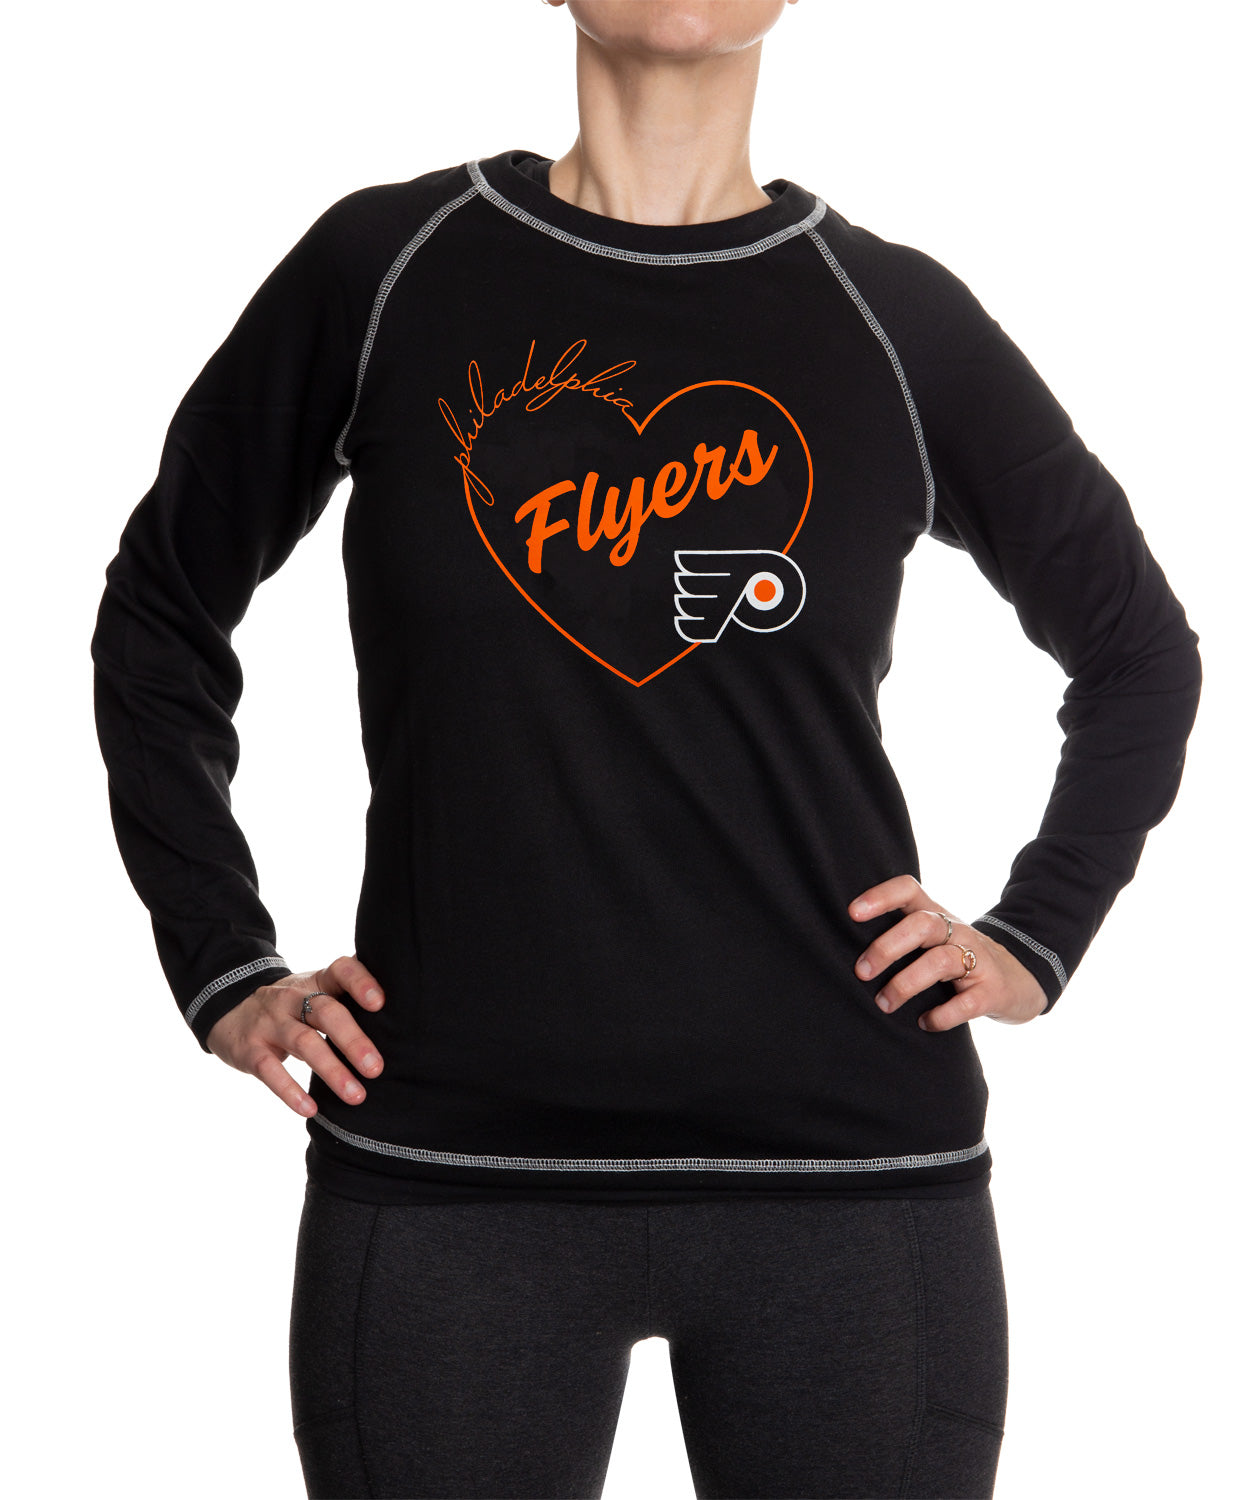 Philadelphia Flyers Heart Logo Long Sleeve Shirt for Women